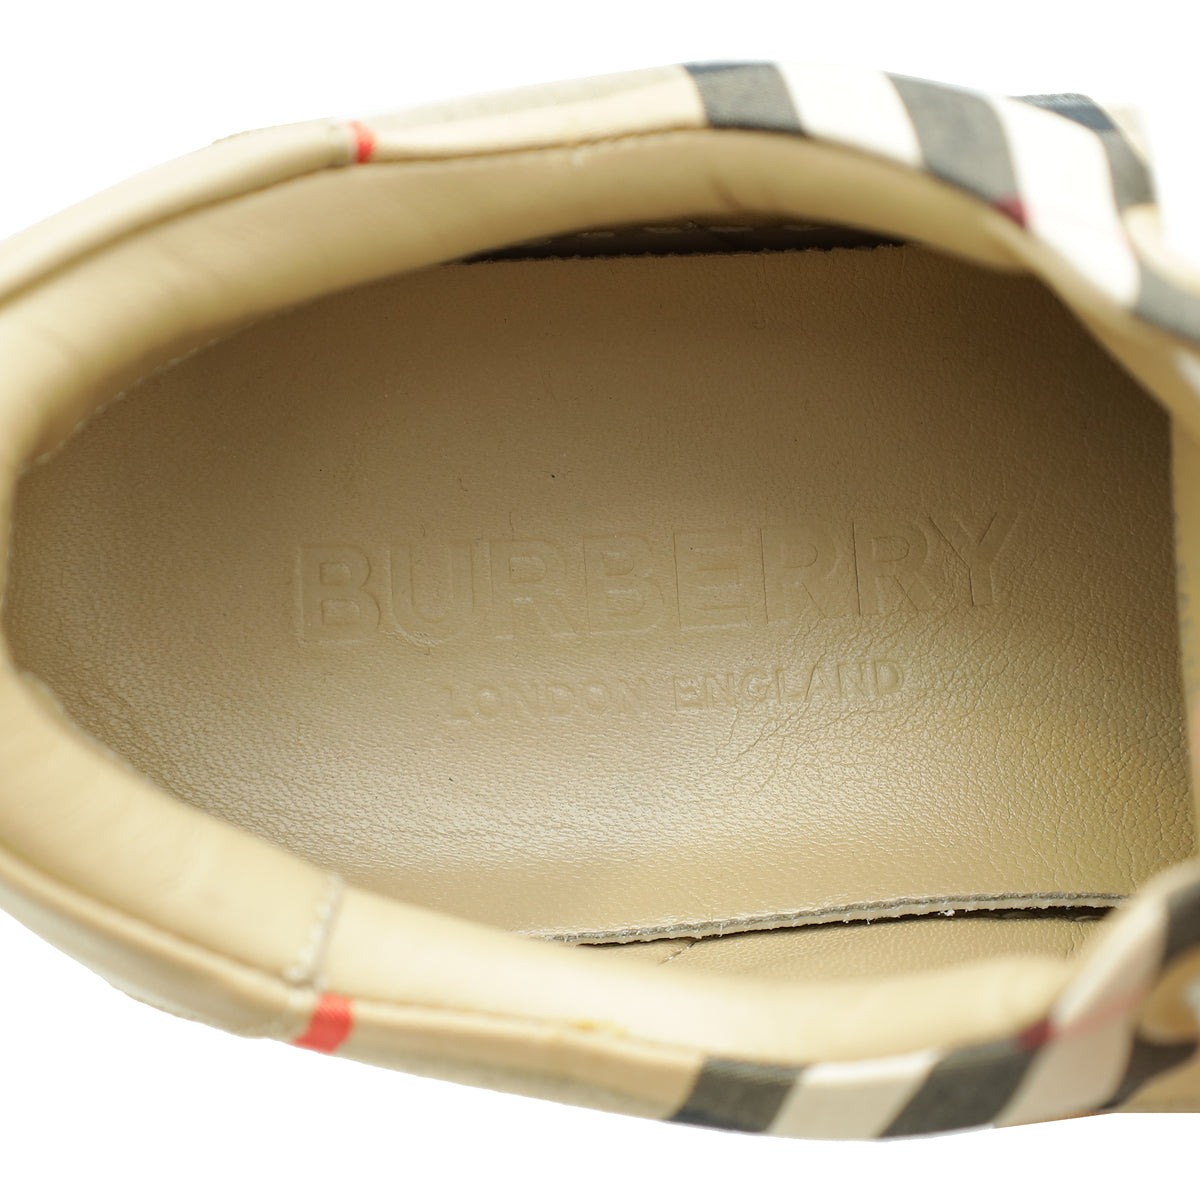 Burberry Beige Albridge Sneakers 37